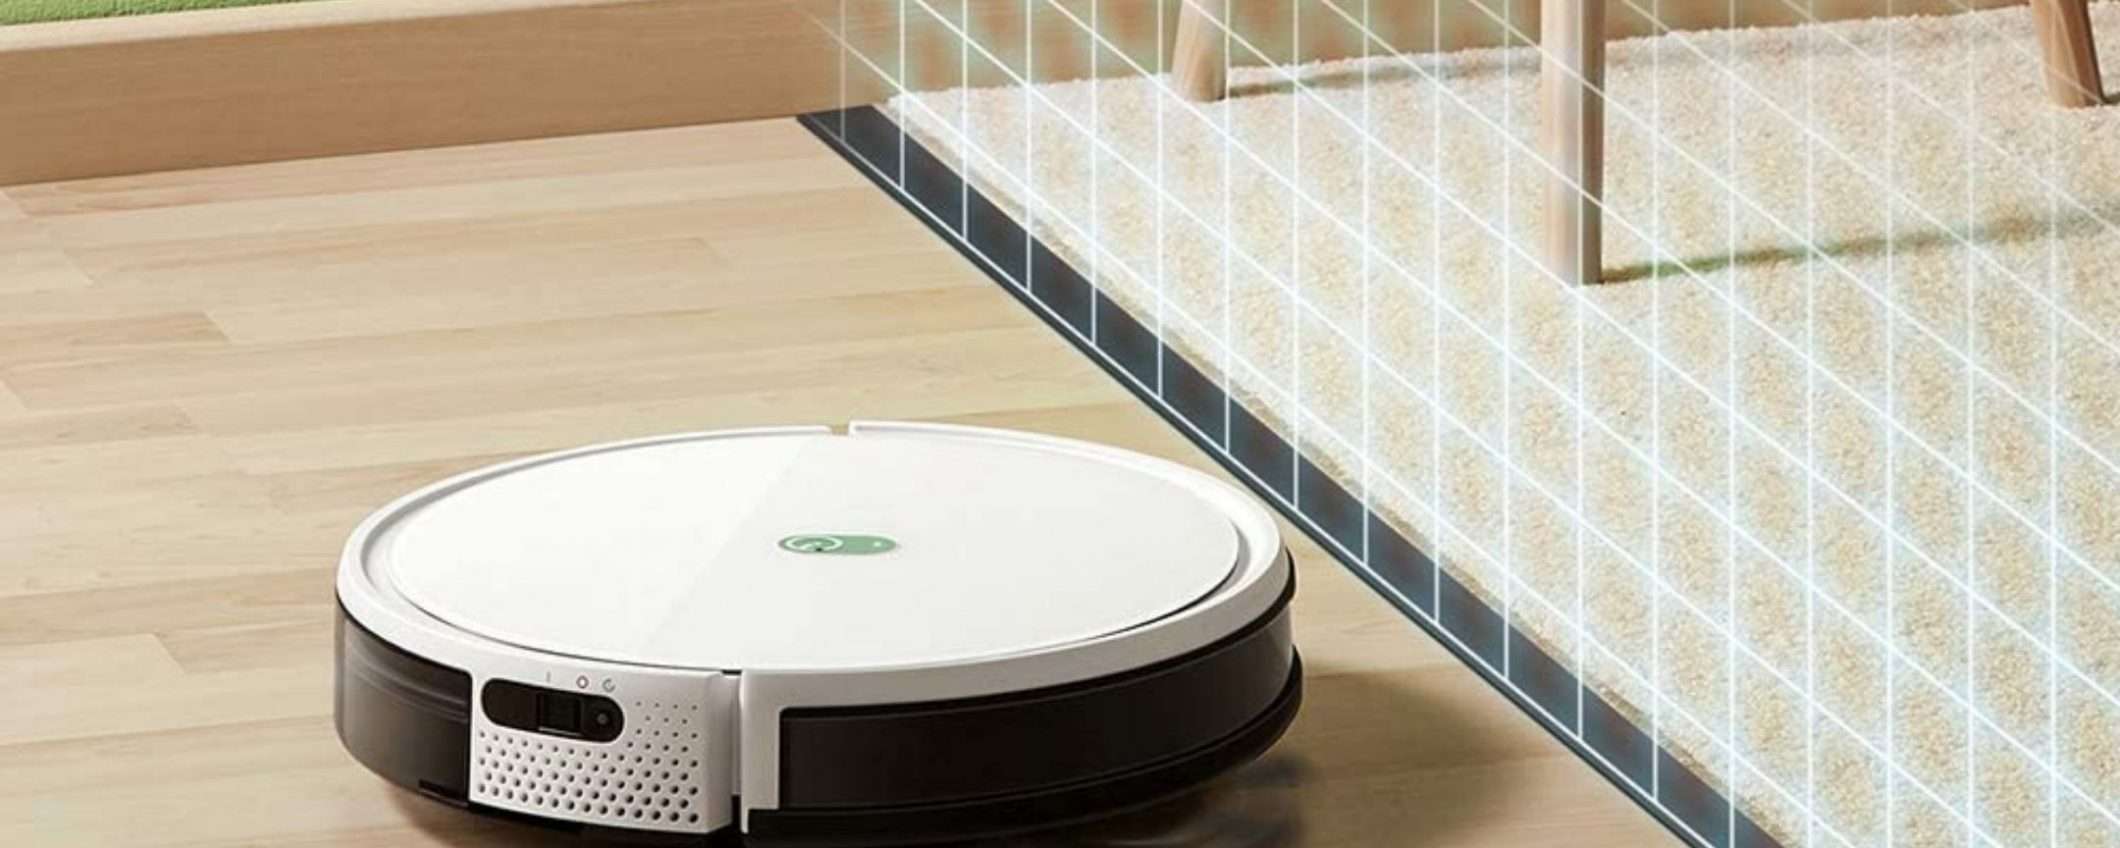 Robot Yeedi: aspira e lava la tua casa (promo in scadenza)